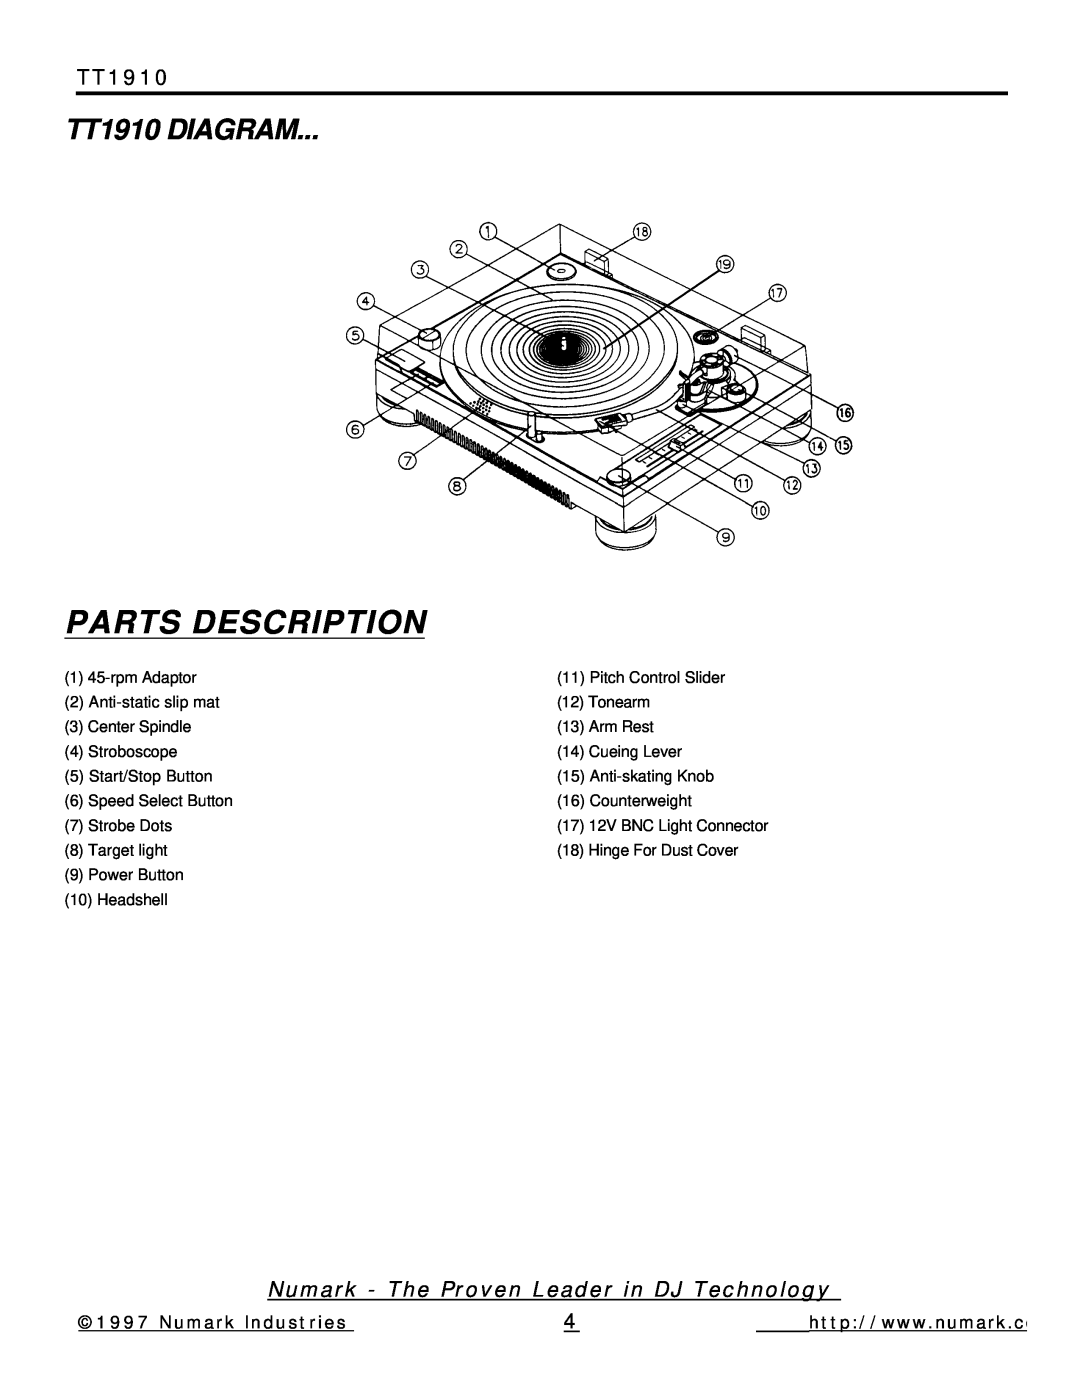 Numark Industries Parts Description, TT1910 DIAGRAM, Numark - The Proven Leader in DJ Technology, Numark Industries 